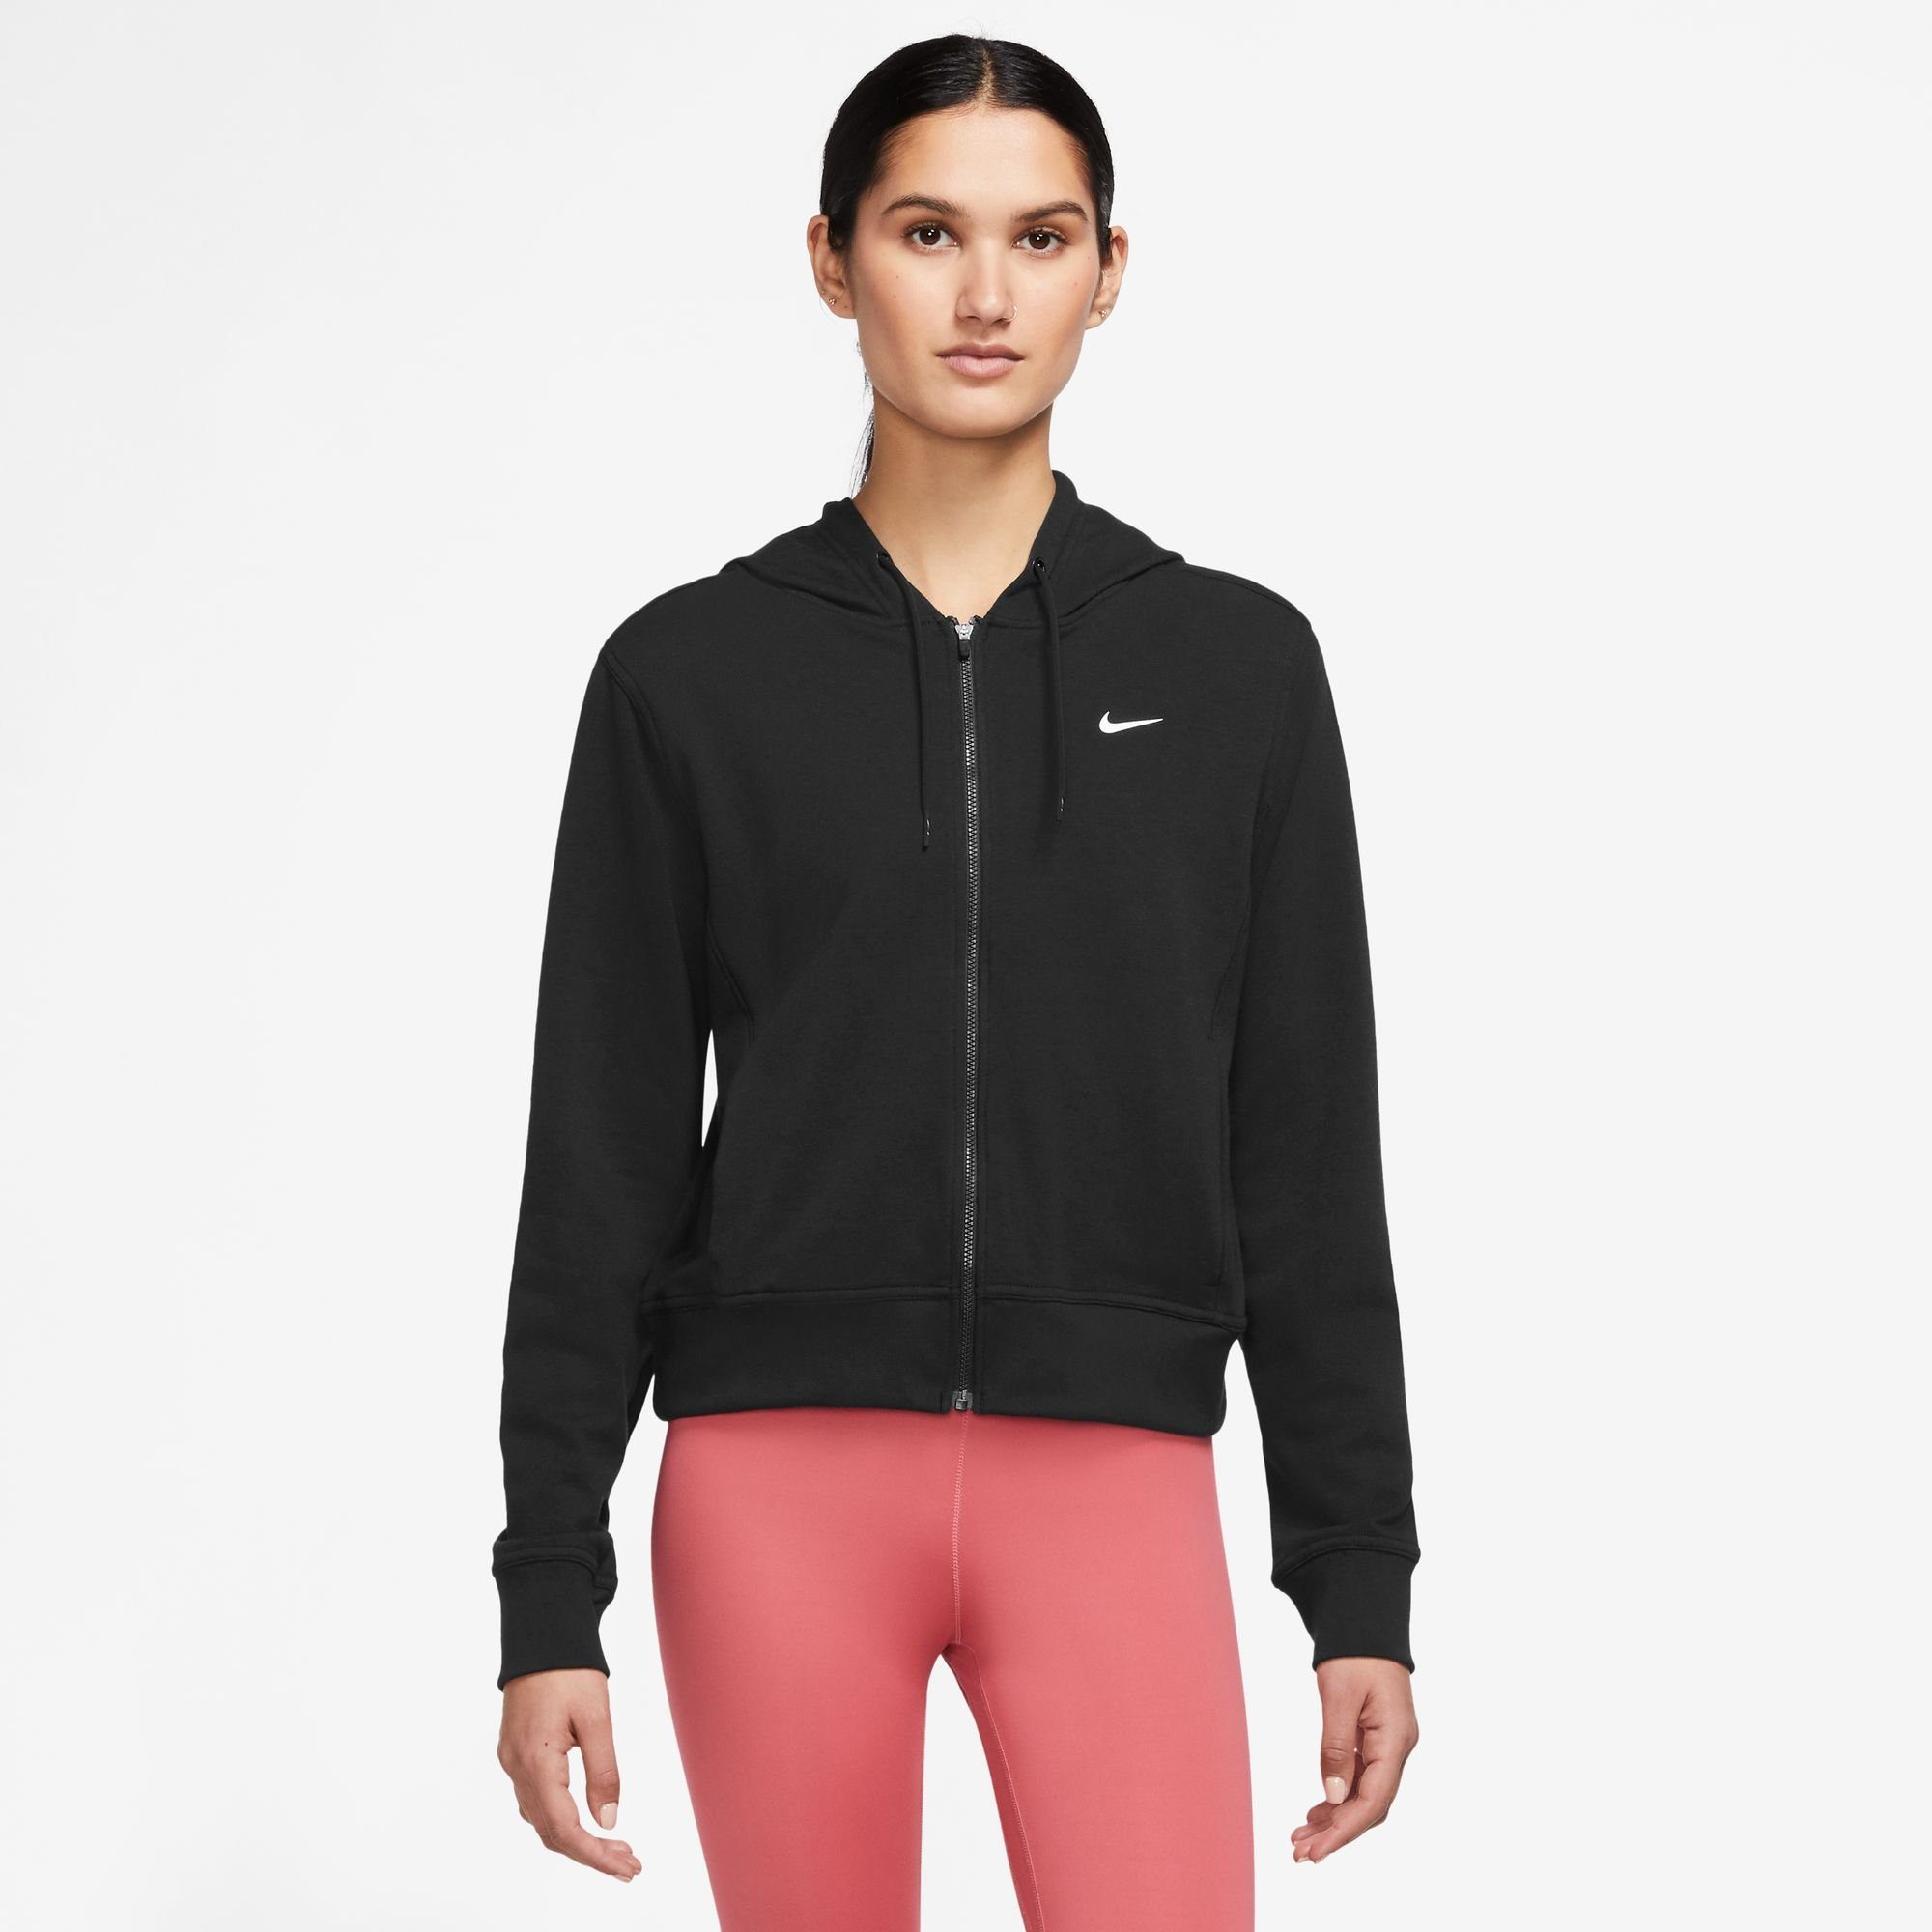 FULL-ZIP Trainingsjacke Nike WOMEN'S ONE DRI-FIT HOODIE BLACK/WHITE